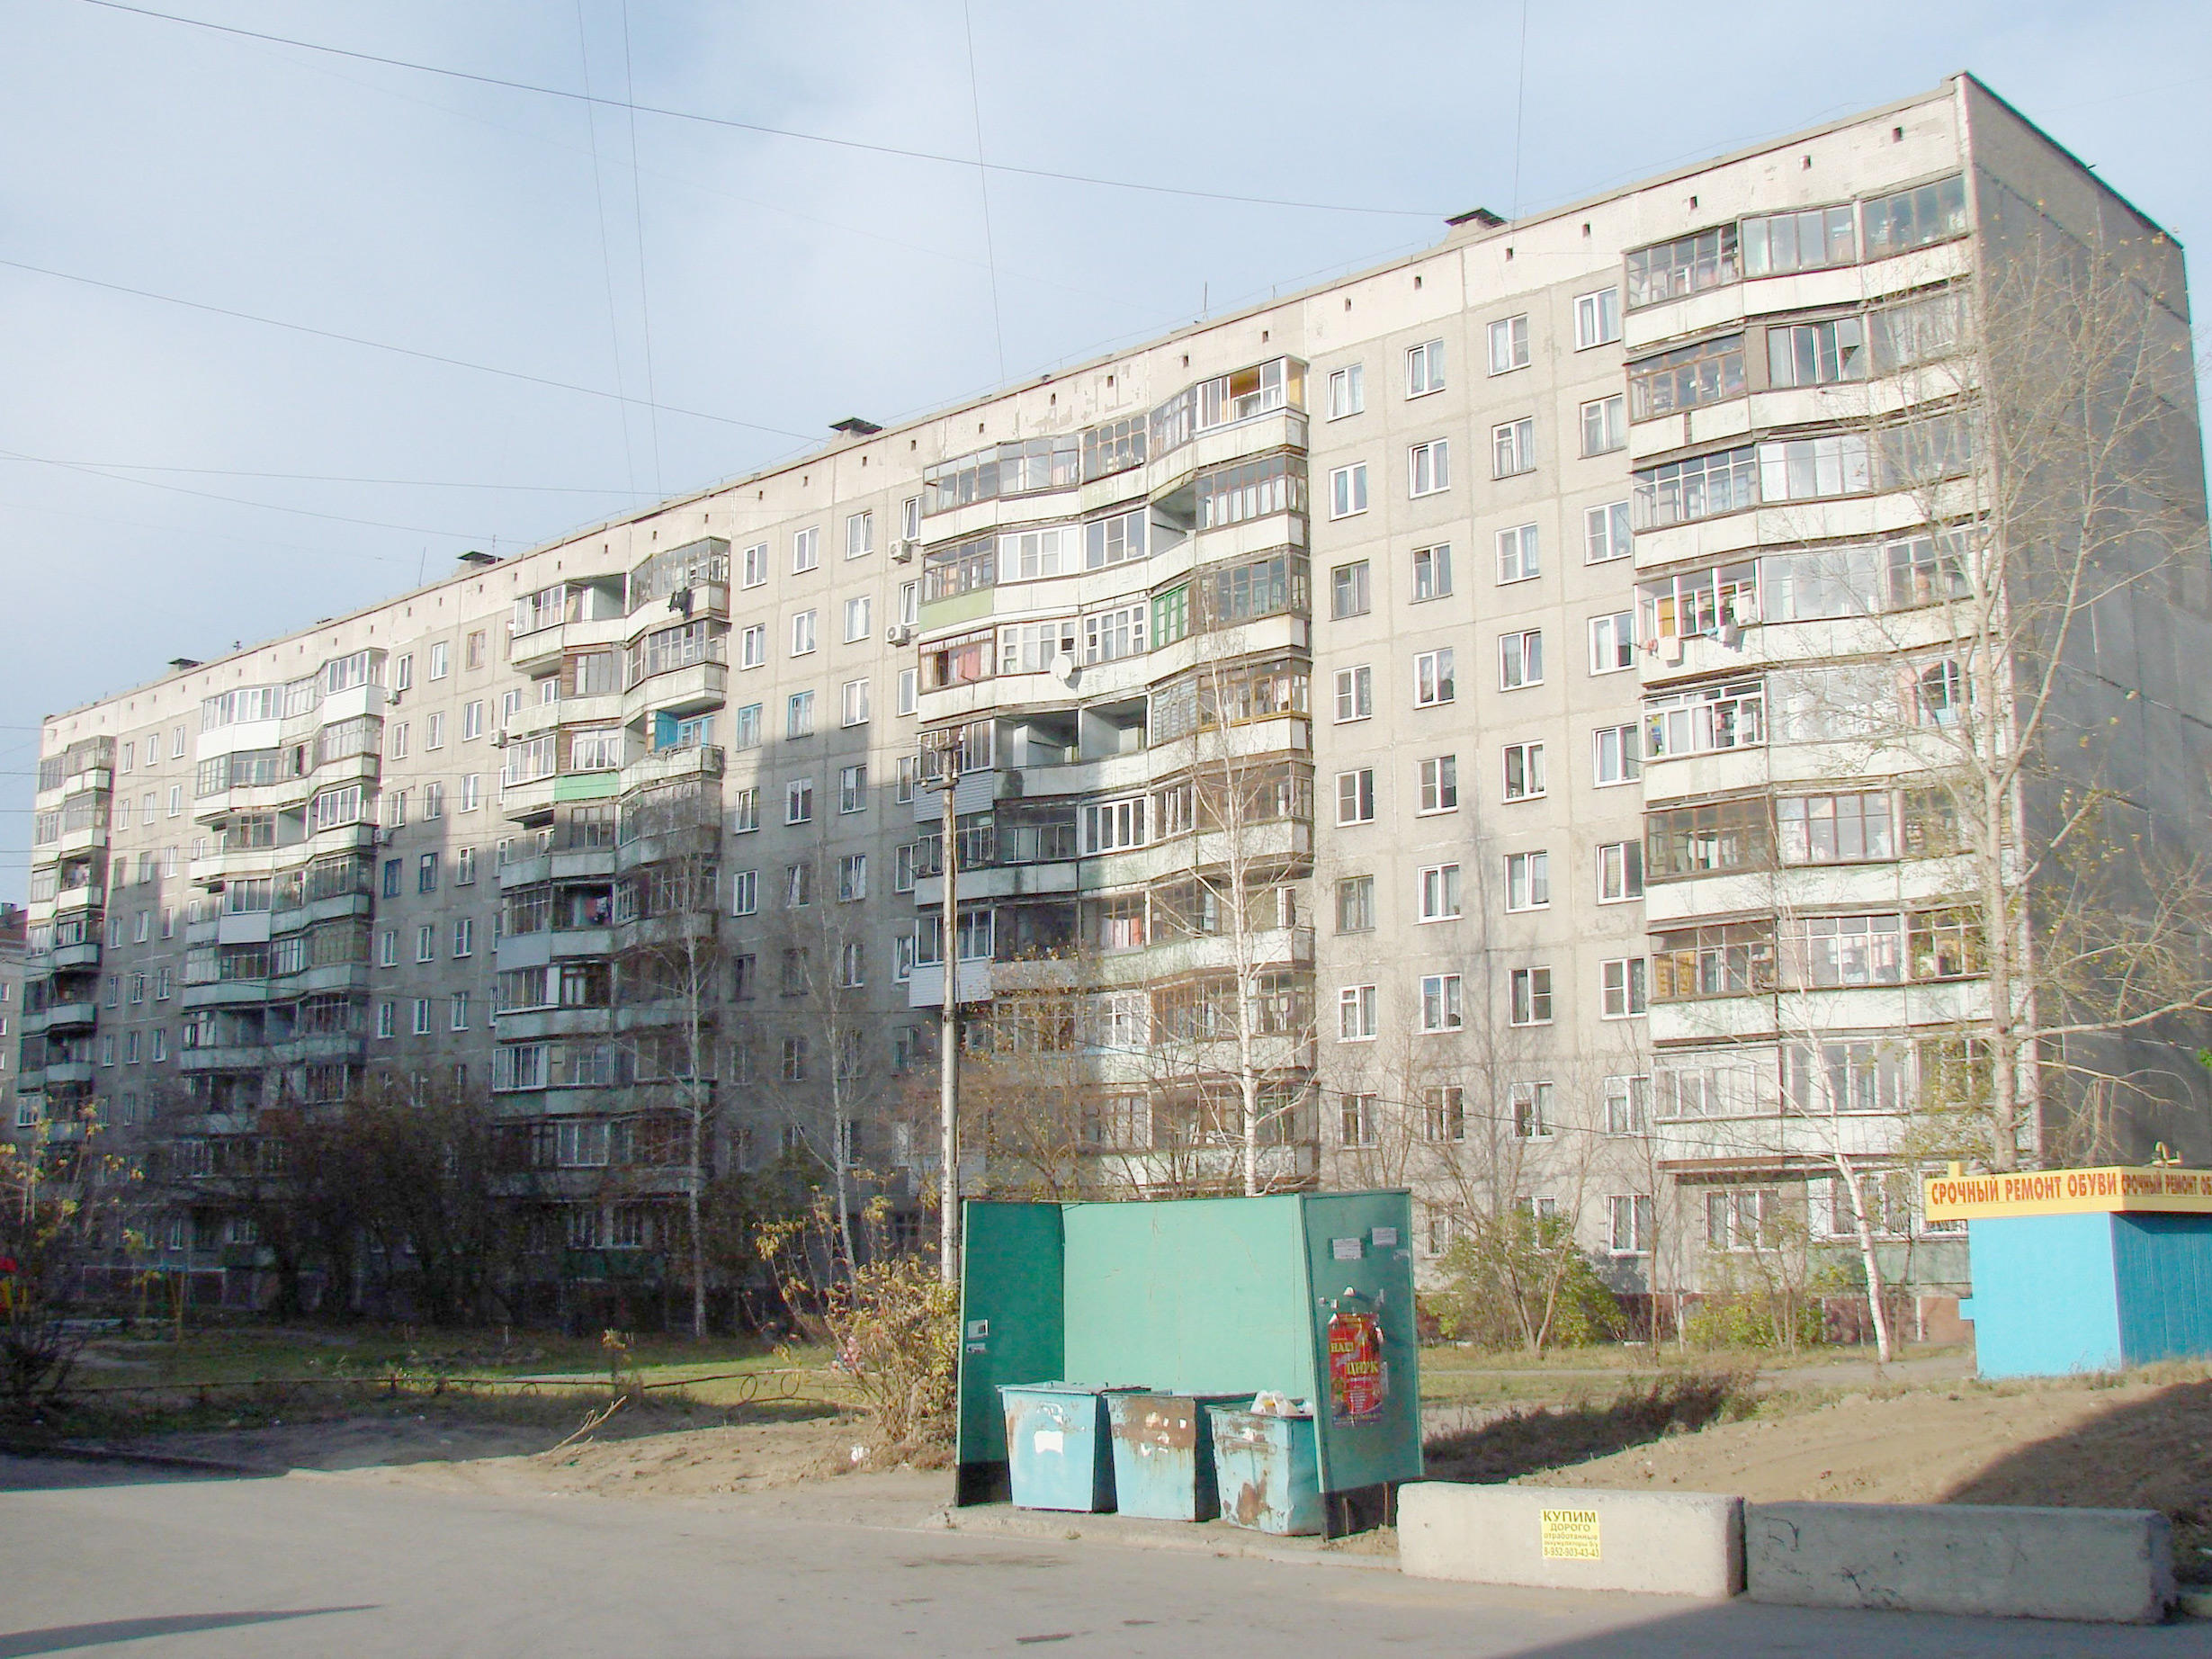 Продажа квартир в переулке Буторина, дом 9 в Екатеринбурге в Свердловской области